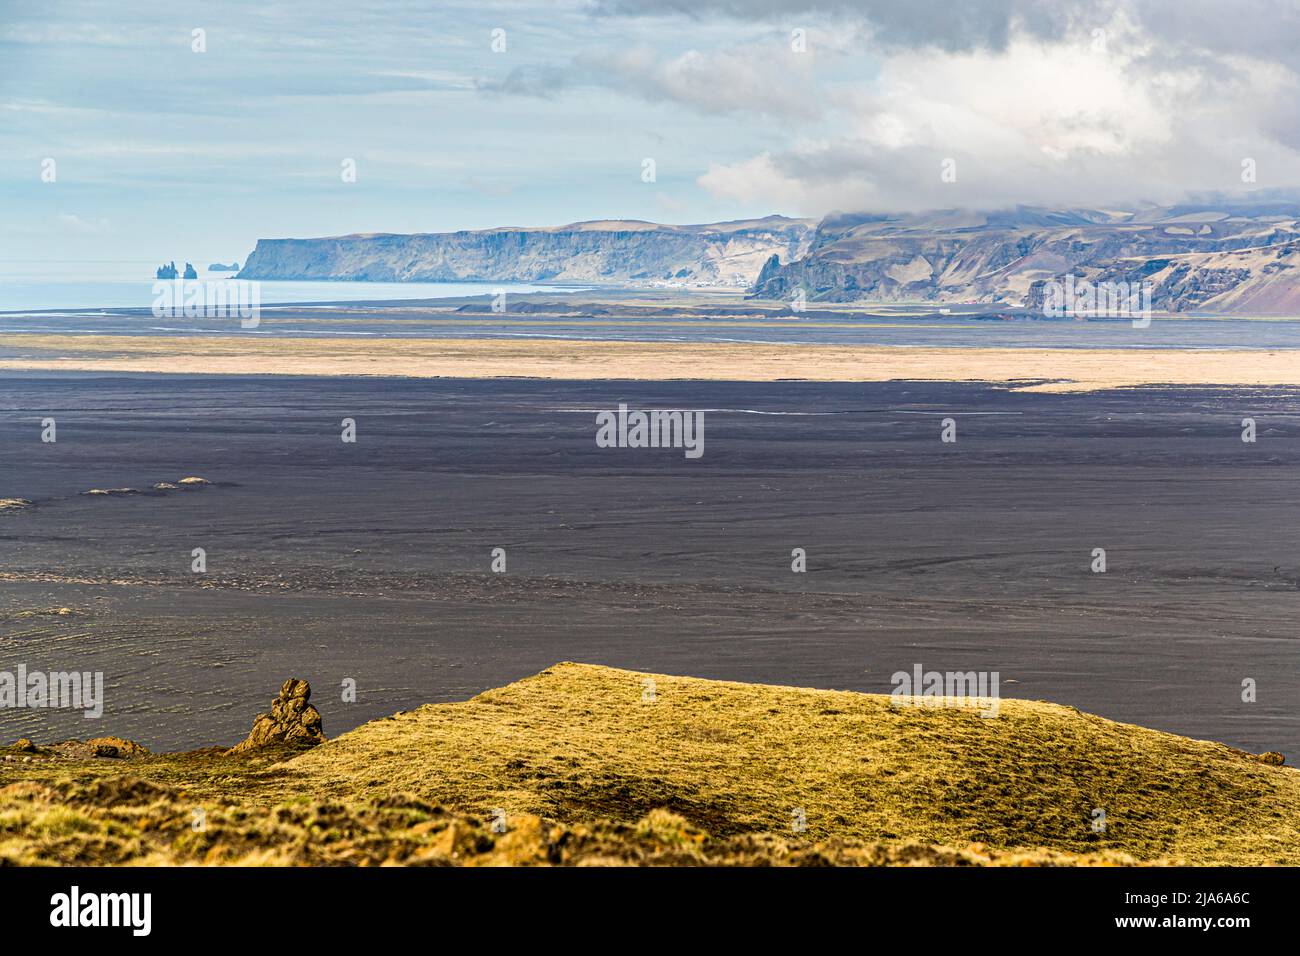 Hjörleifshöfði est une montagne de 220 mètres faite de palagonite. Il porte le nom de Hjörleifur Hróðmarsson, l'un des premiers colons en Islande, qui s'est installé dans cette région à la fin du 9th siècle Banque D'Images